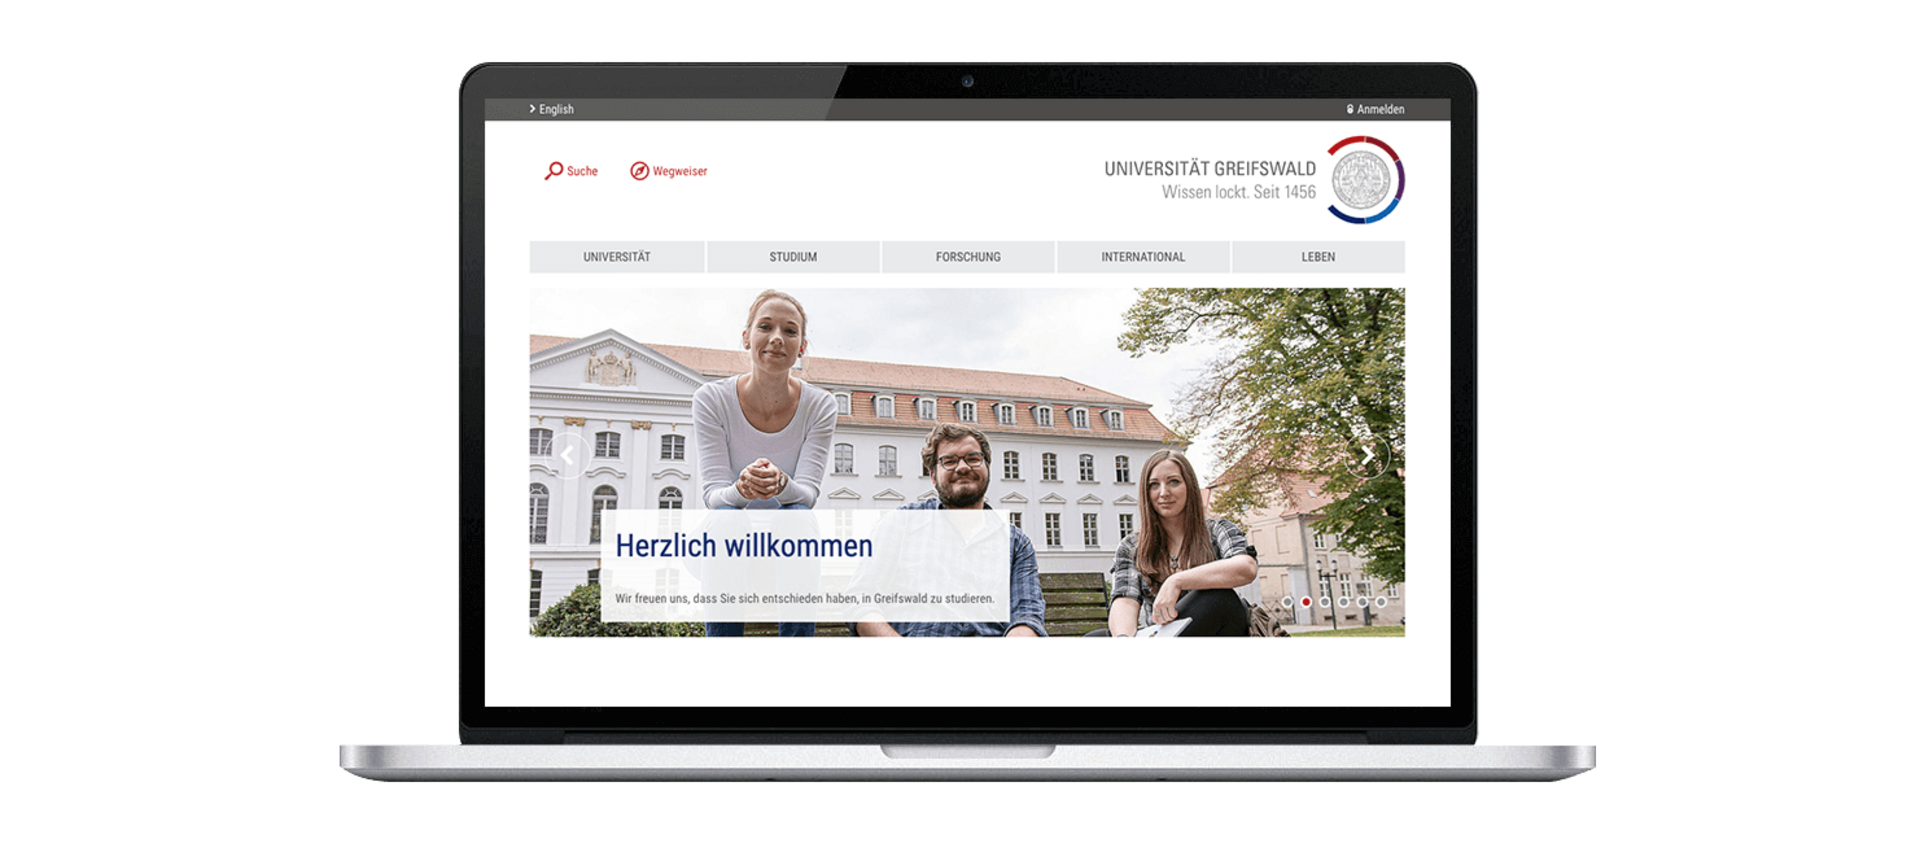 MacBook Screen zeigt Landingpage der Uni Greifswald